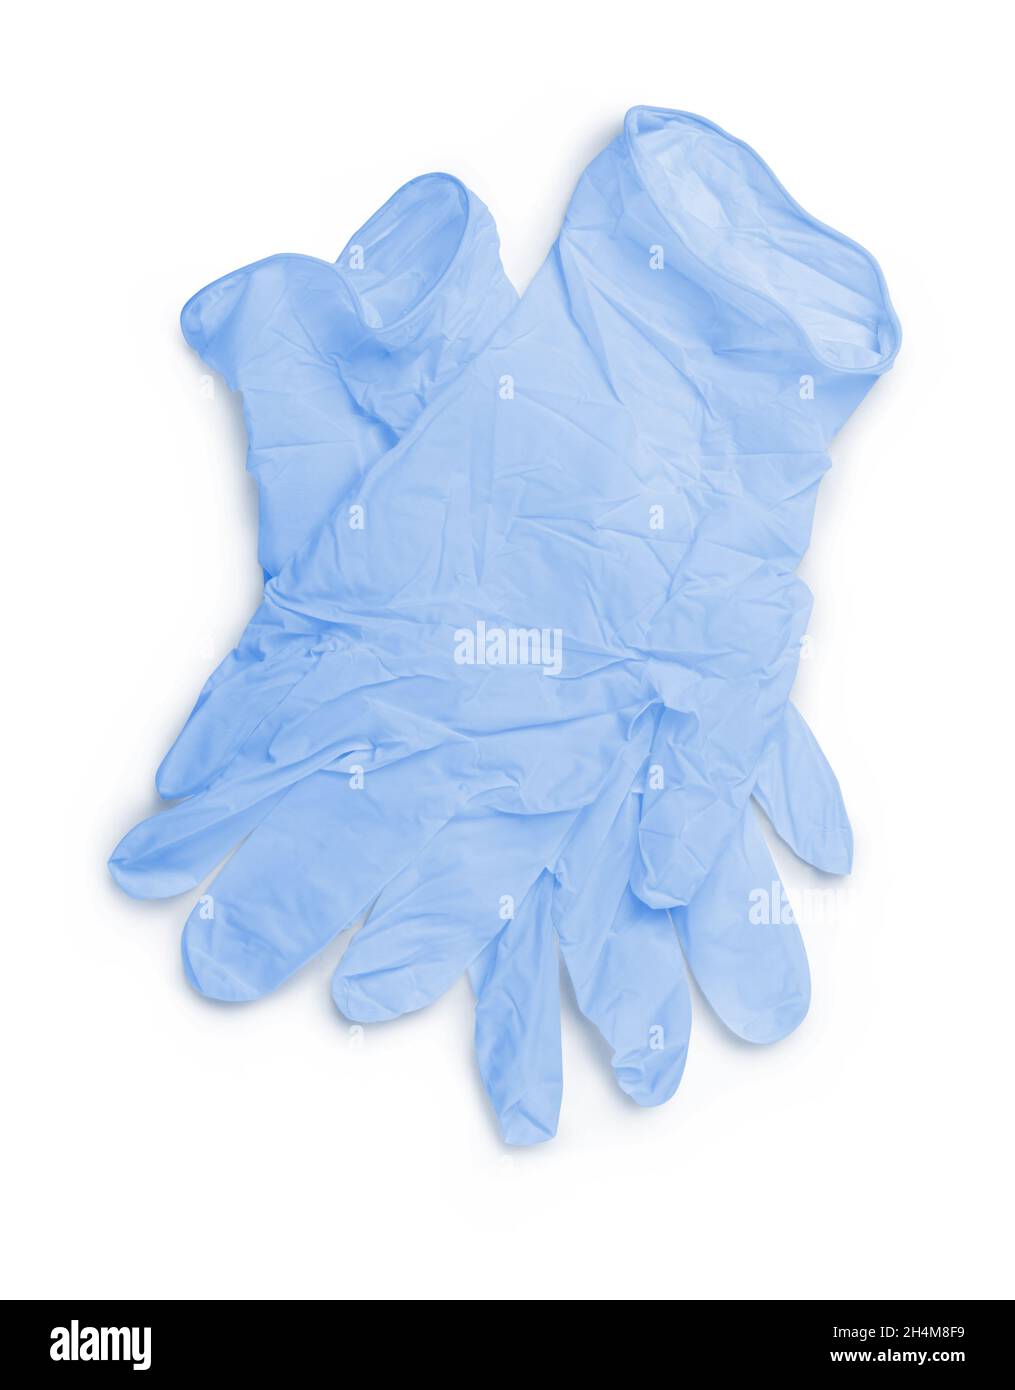 Par de guantes de látex médicos azules cierre aislado sobre un fondo blanco Foto de stock